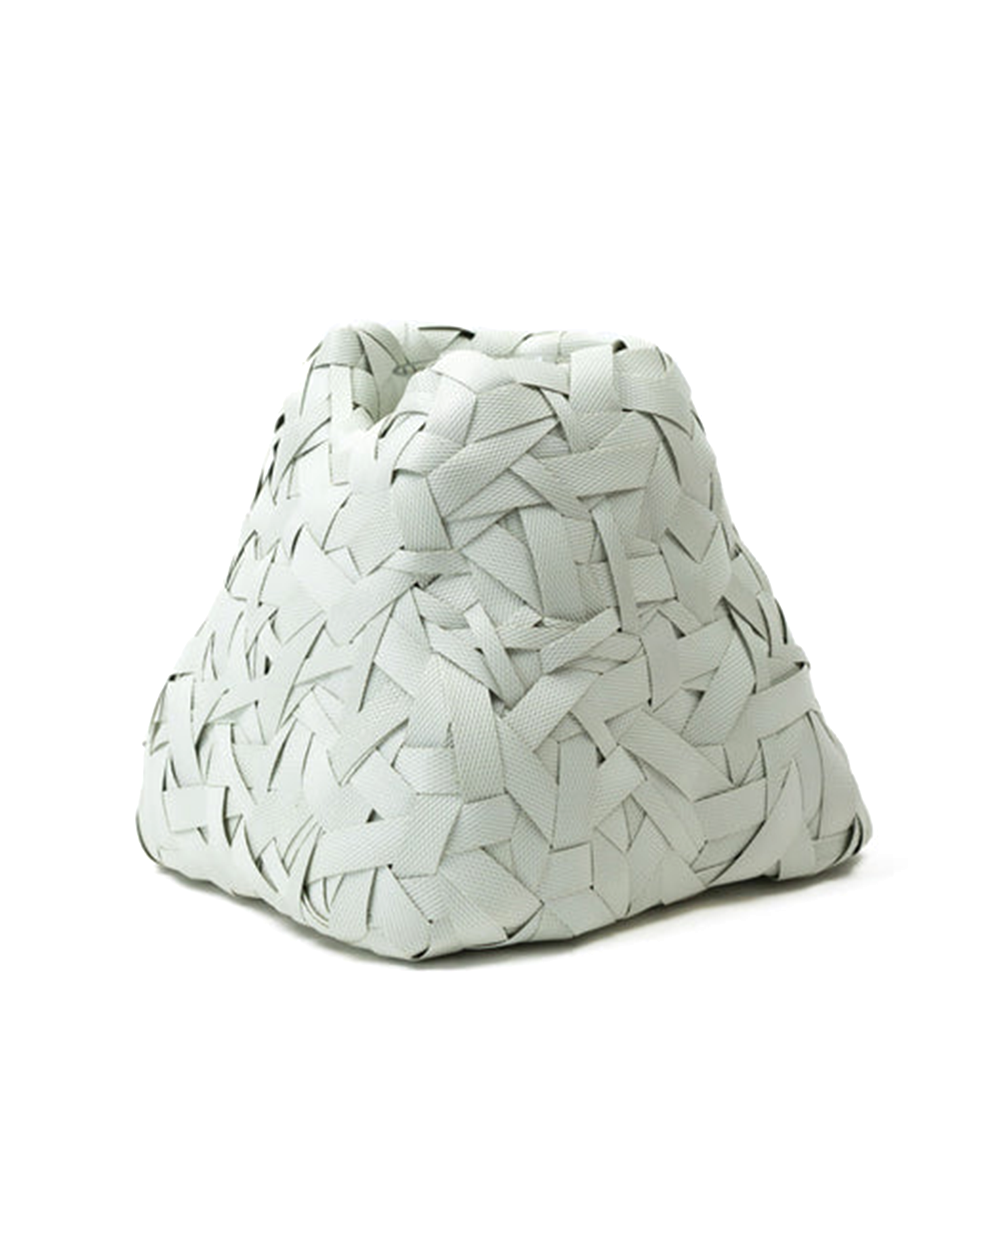 Woven Ecologi Vase - White